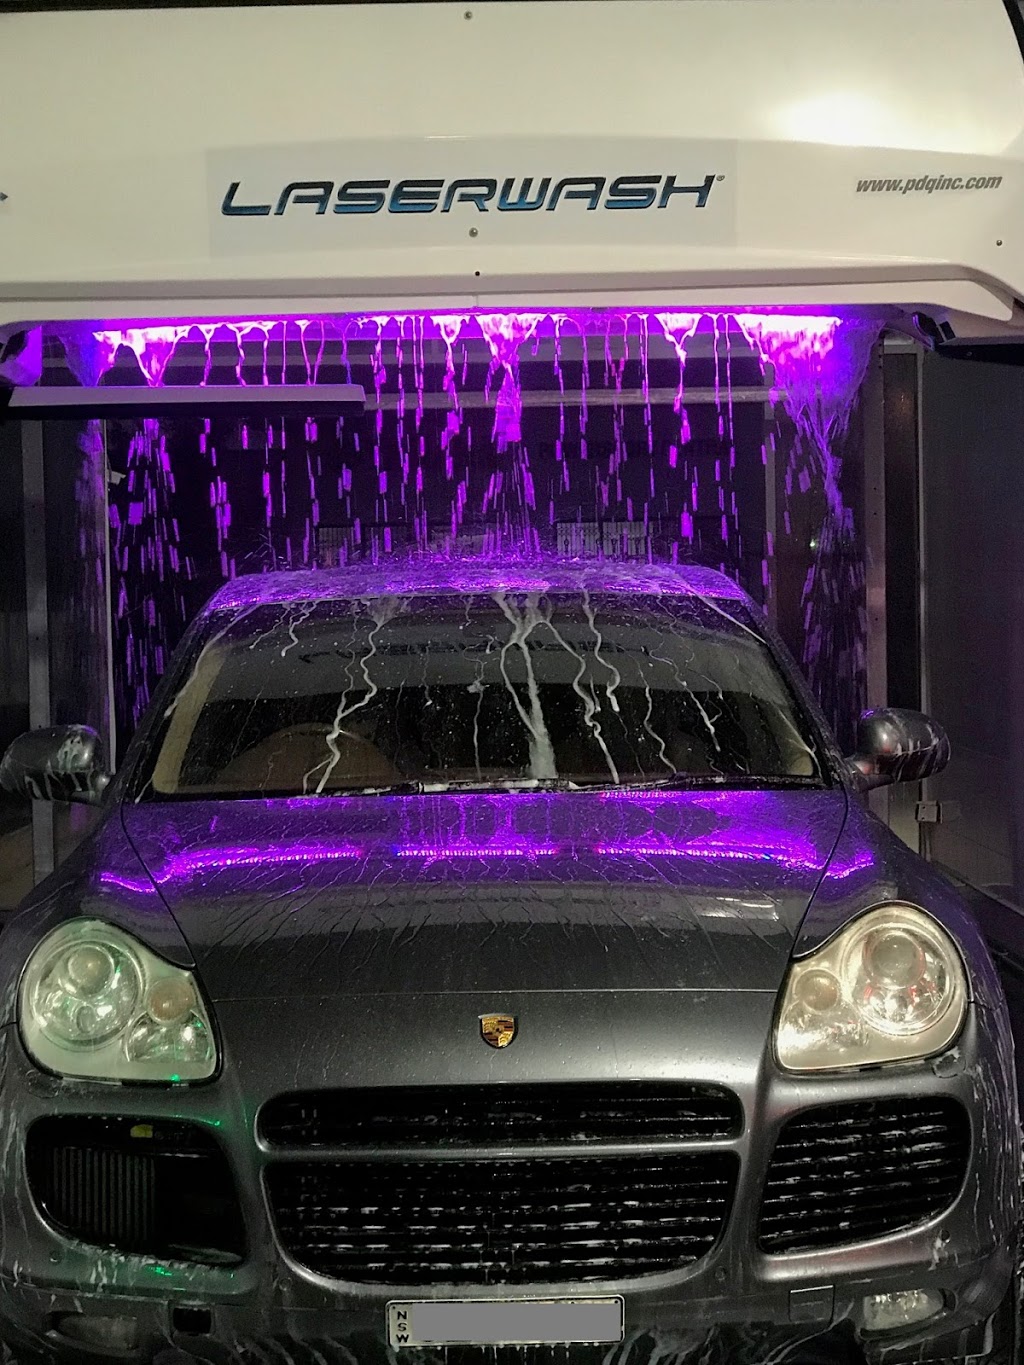 Morisset Car & Dog Wash | car wash | 46 Alliance Ave, Morisset NSW 2283, Australia